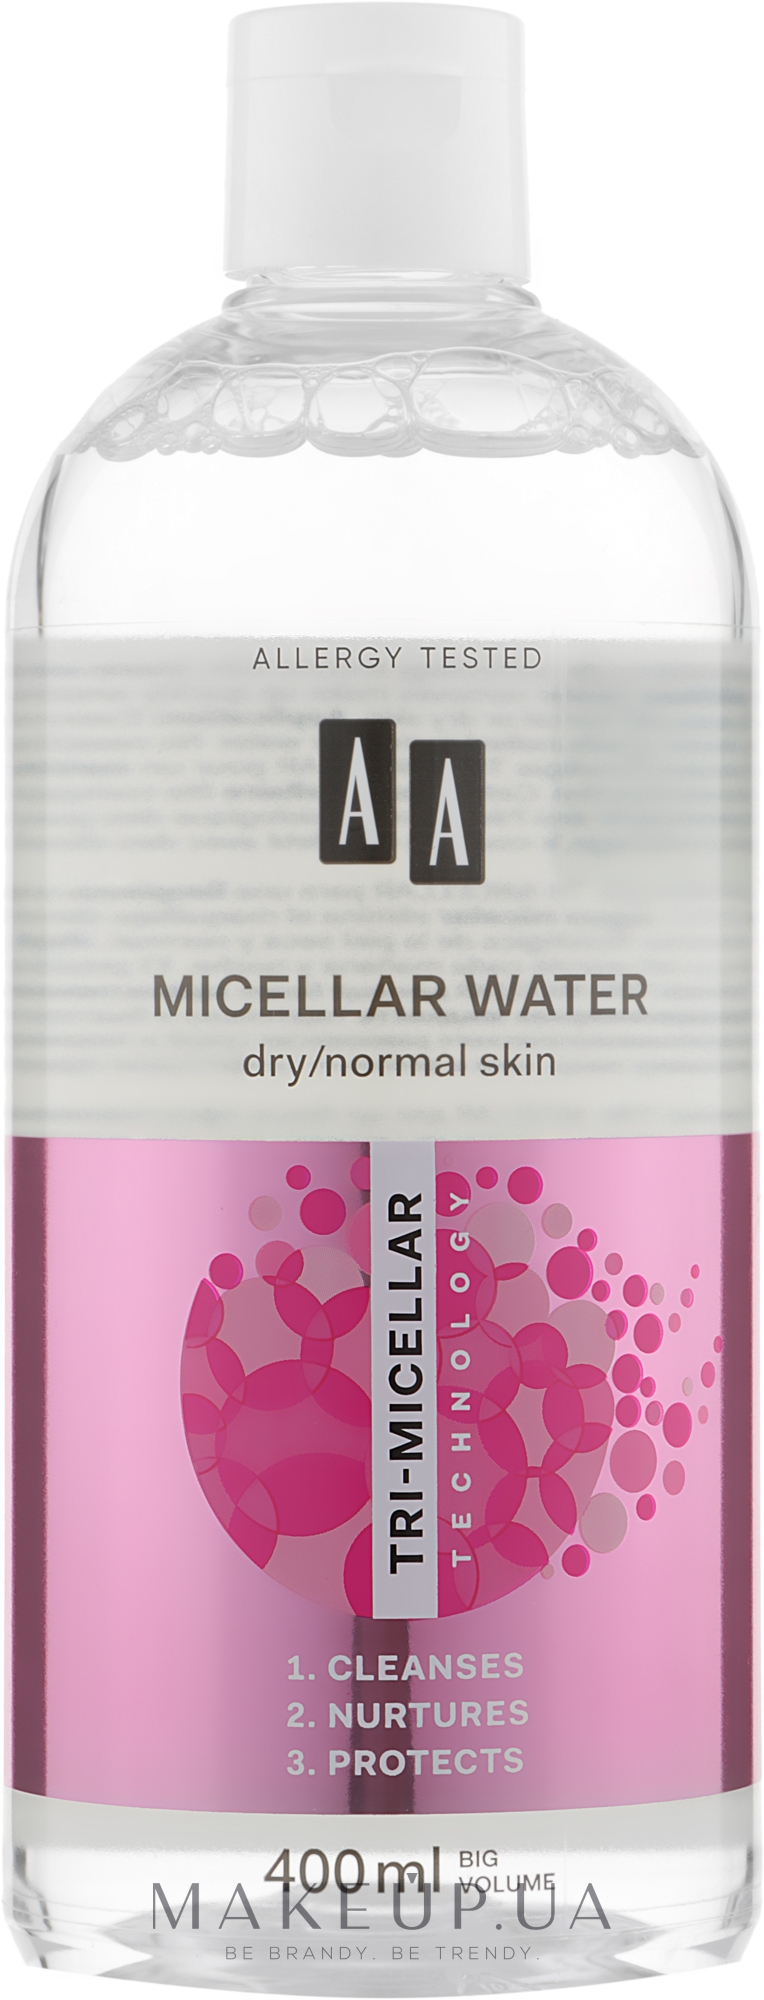 Міцелярна вода для сухої і нормальної шкіри - AA Cosmetics Tri-Micellar 3-in-1 Micellar Water — фото 400ml